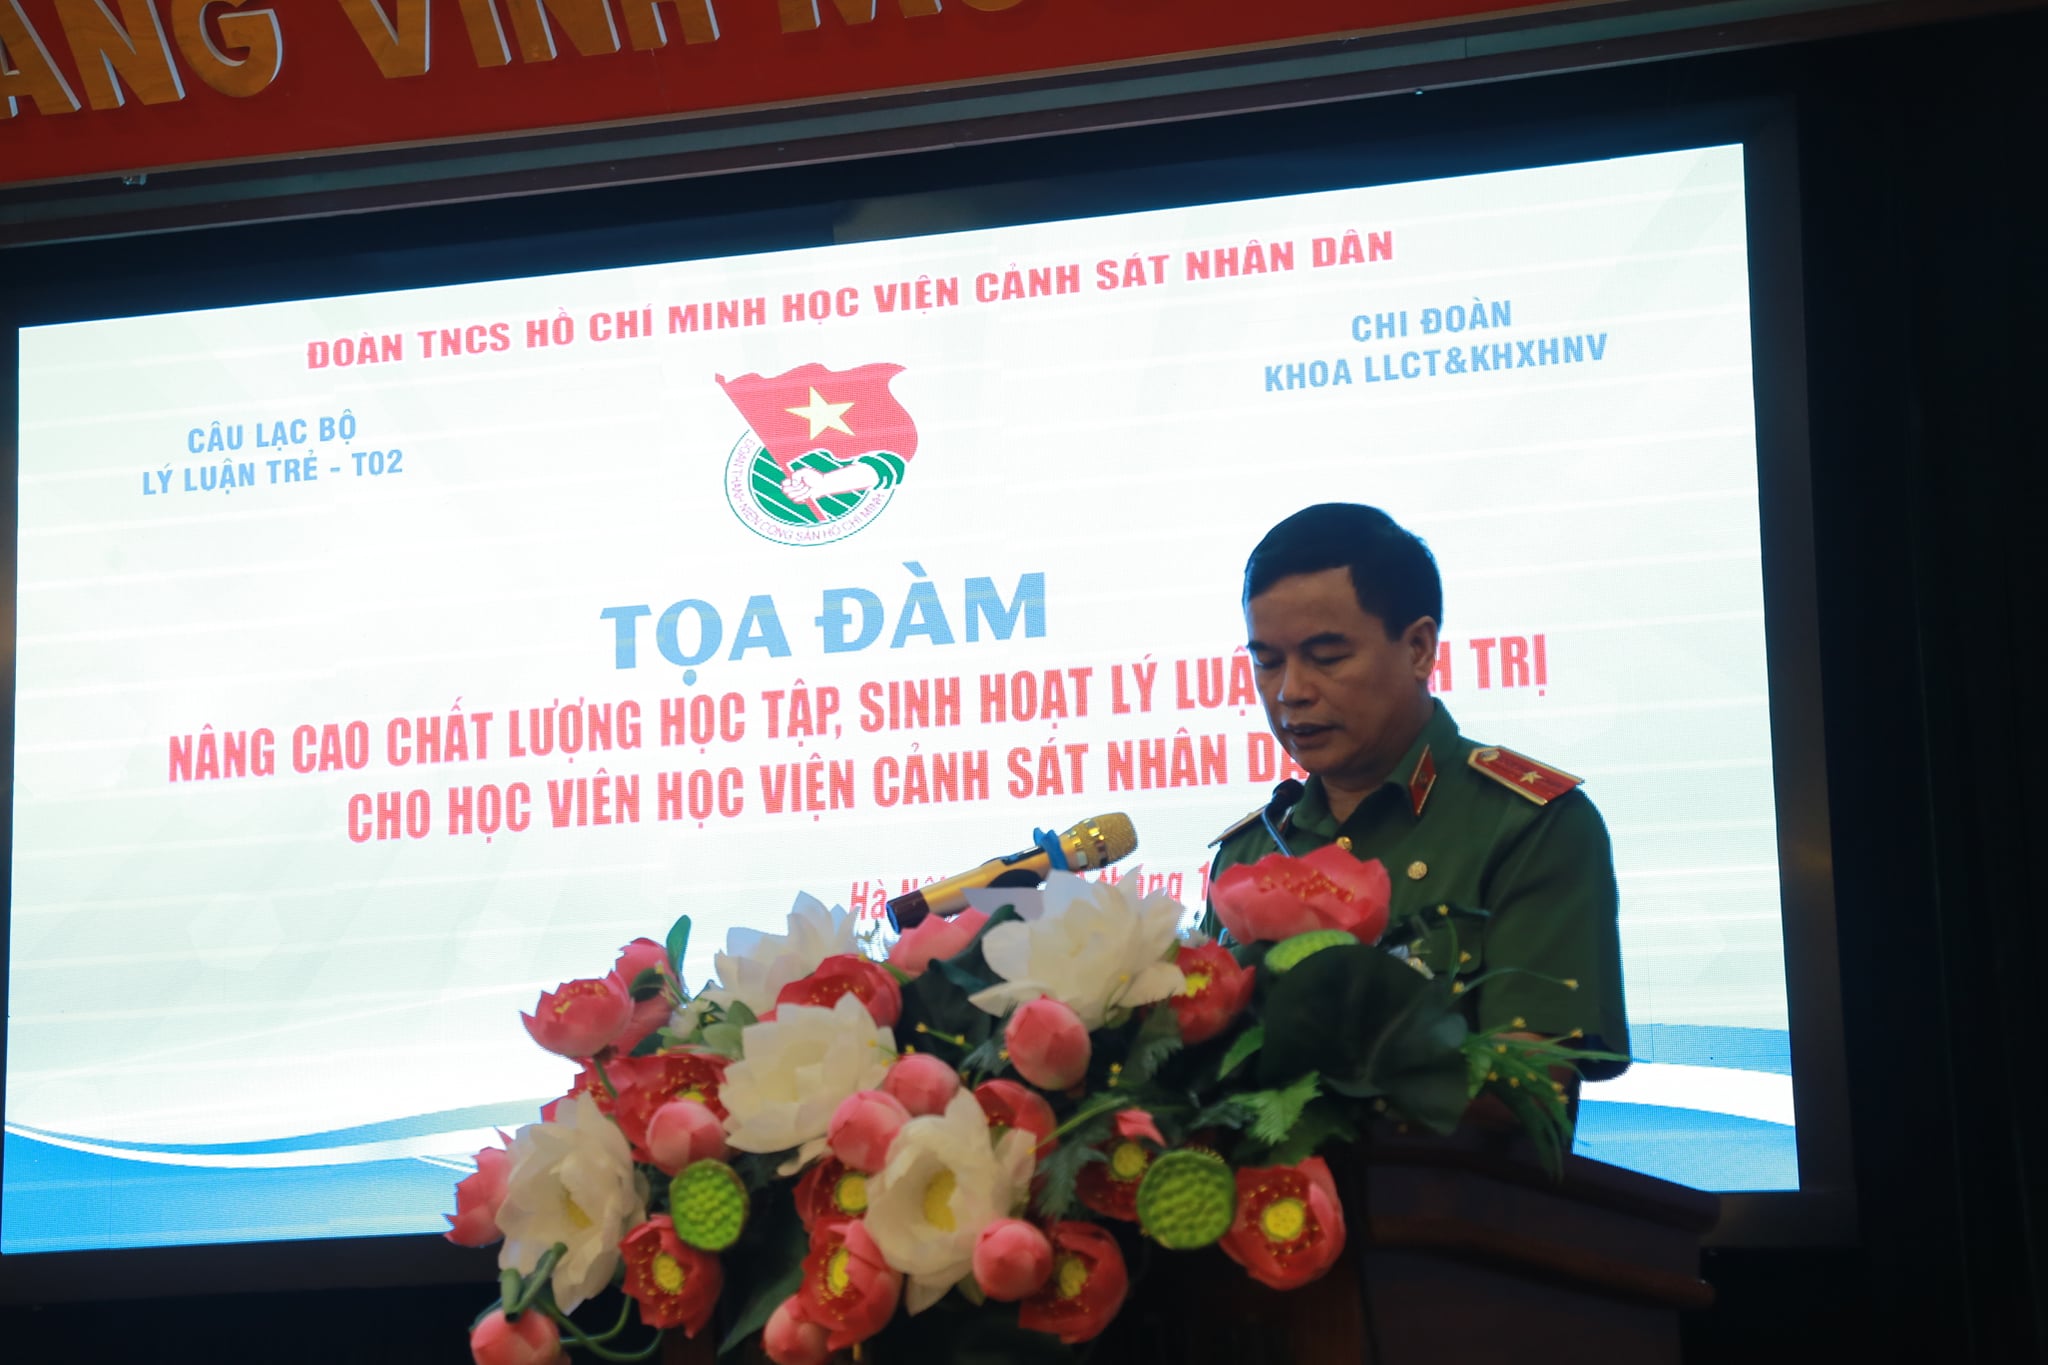 Thiếu tướng, GS.TS Nguyễn Đắc Hoan - Phó Giám đốc Học viện phát biểu tại chương trình